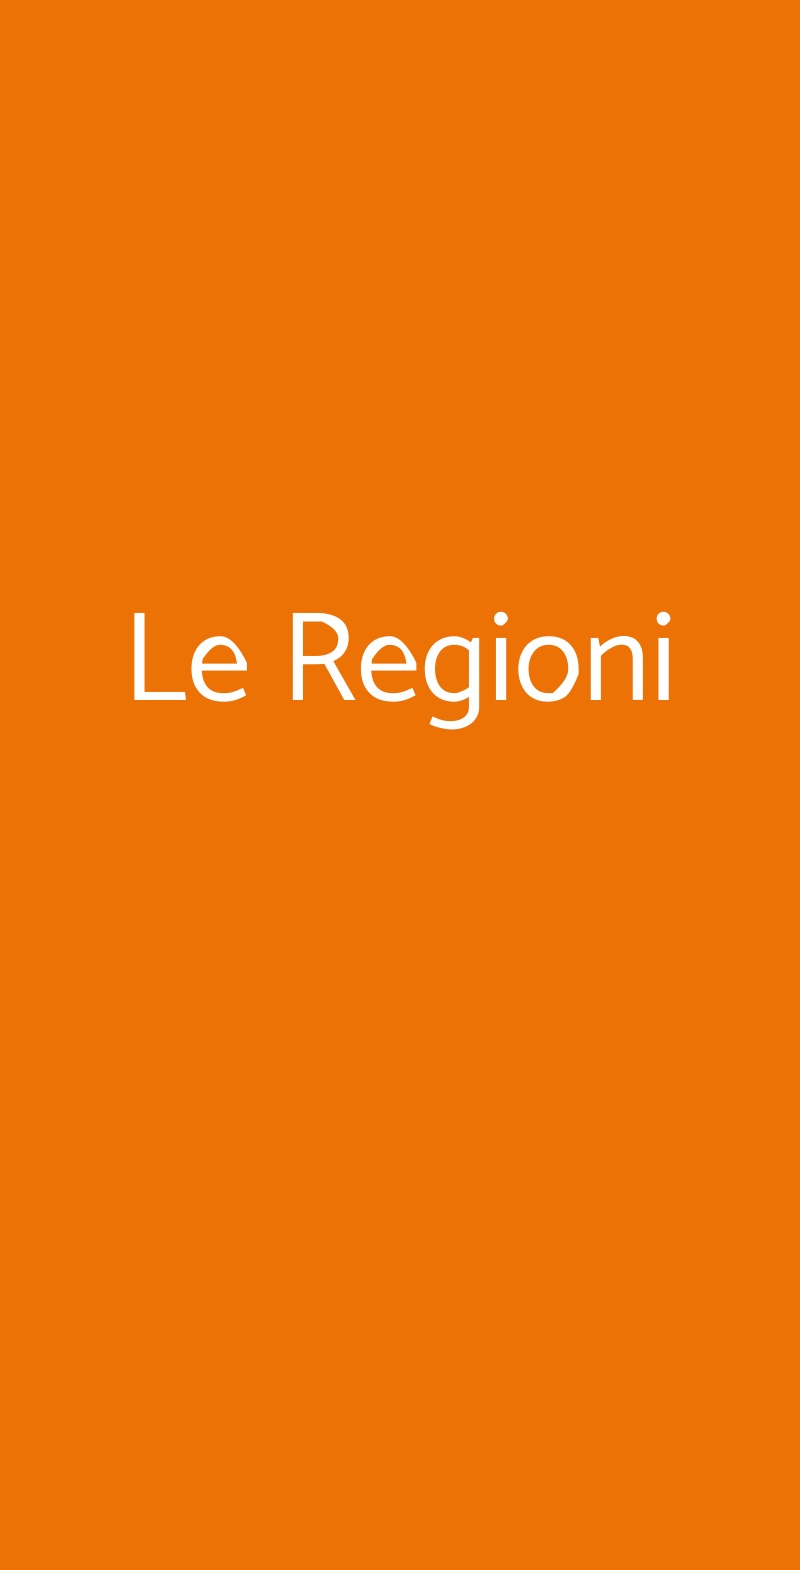 Le Regioni Milano menù 1 pagina